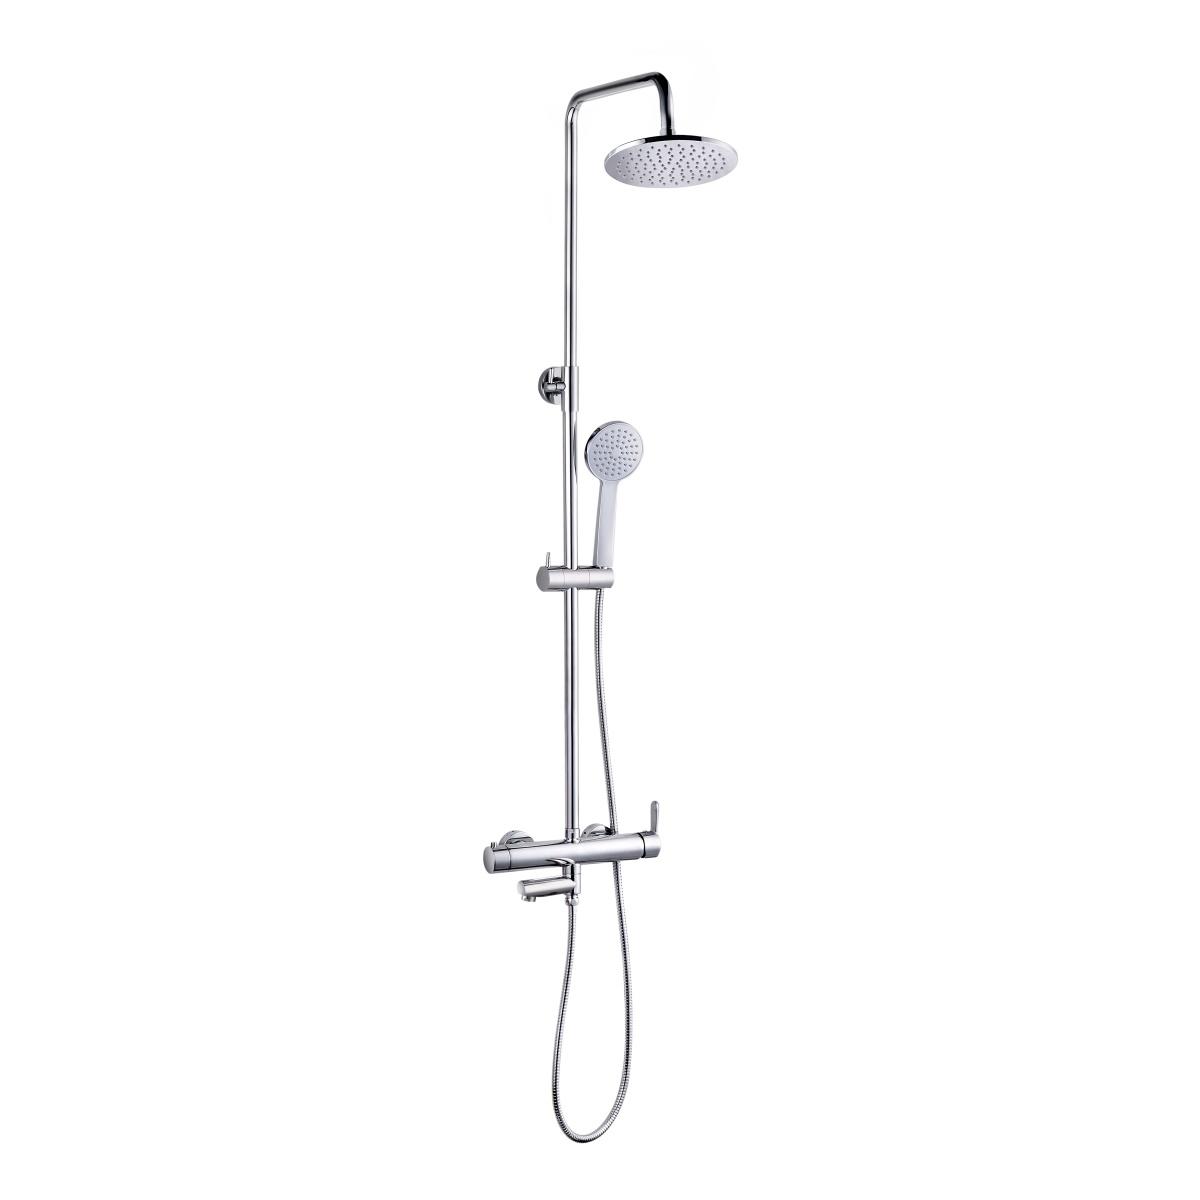 YS34223 Cột sen tắm có vòi, cột tắm mưa, có thể điều chỉnh độ cao;